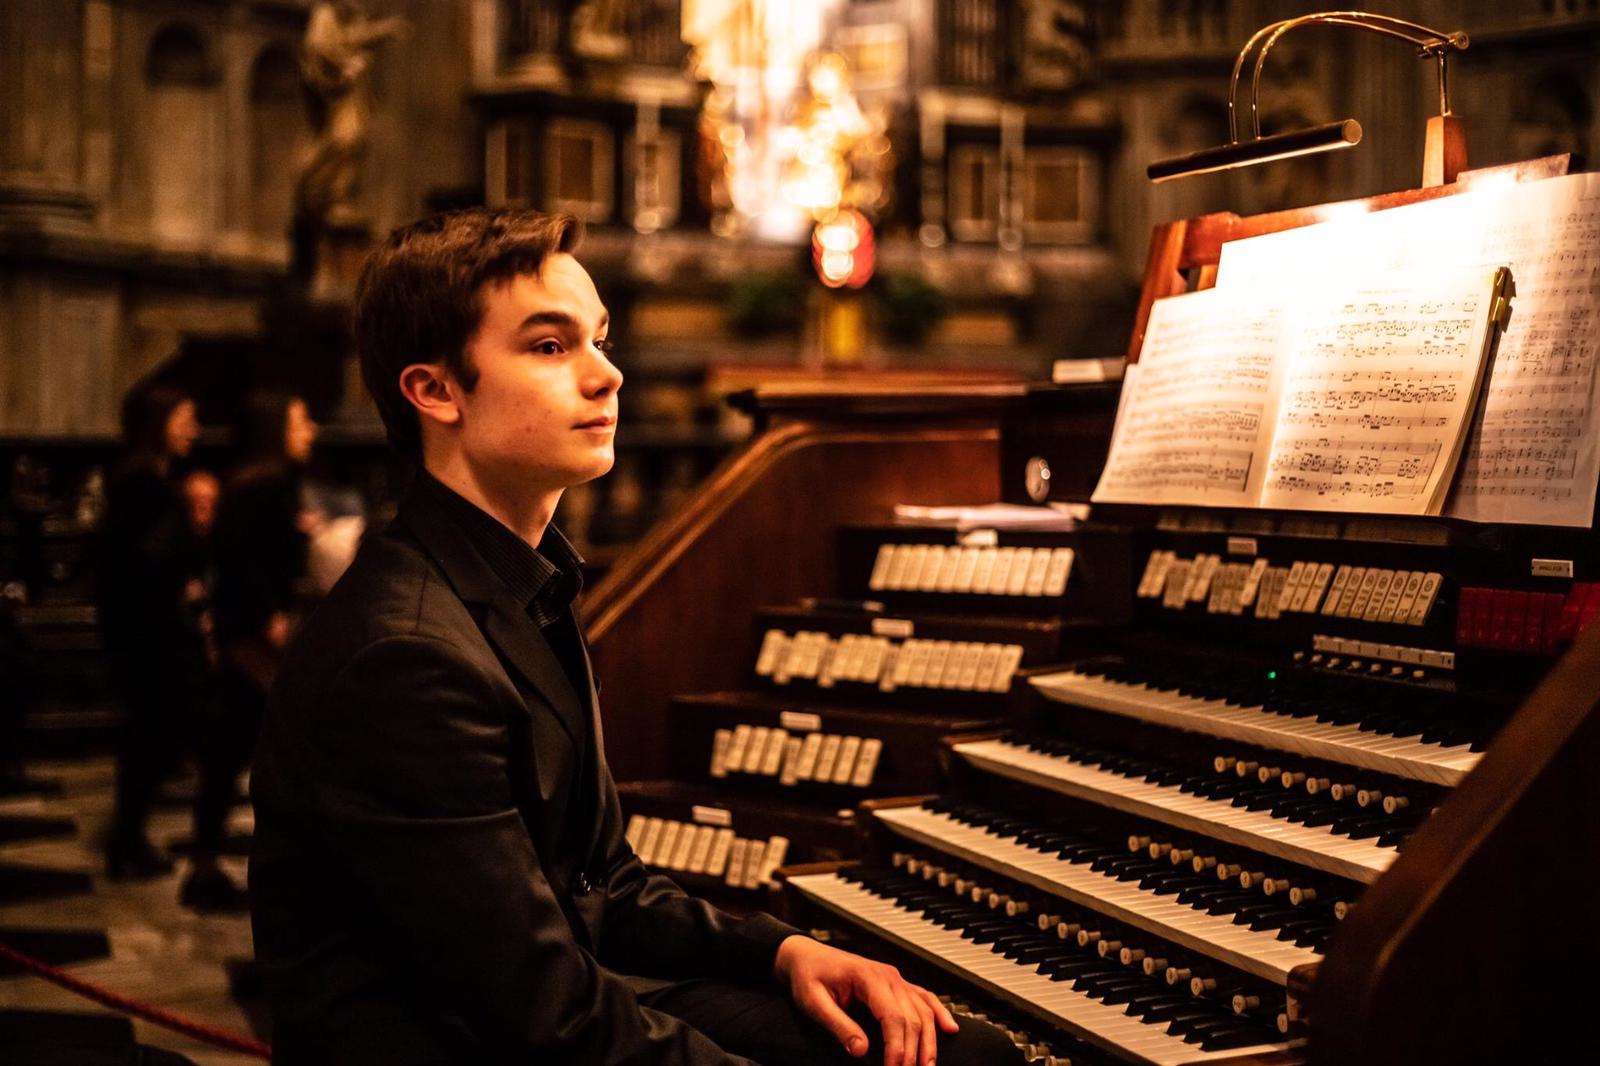 Sabato concerto d’organo a Rovello col giovane maestro Gorla di Tradate